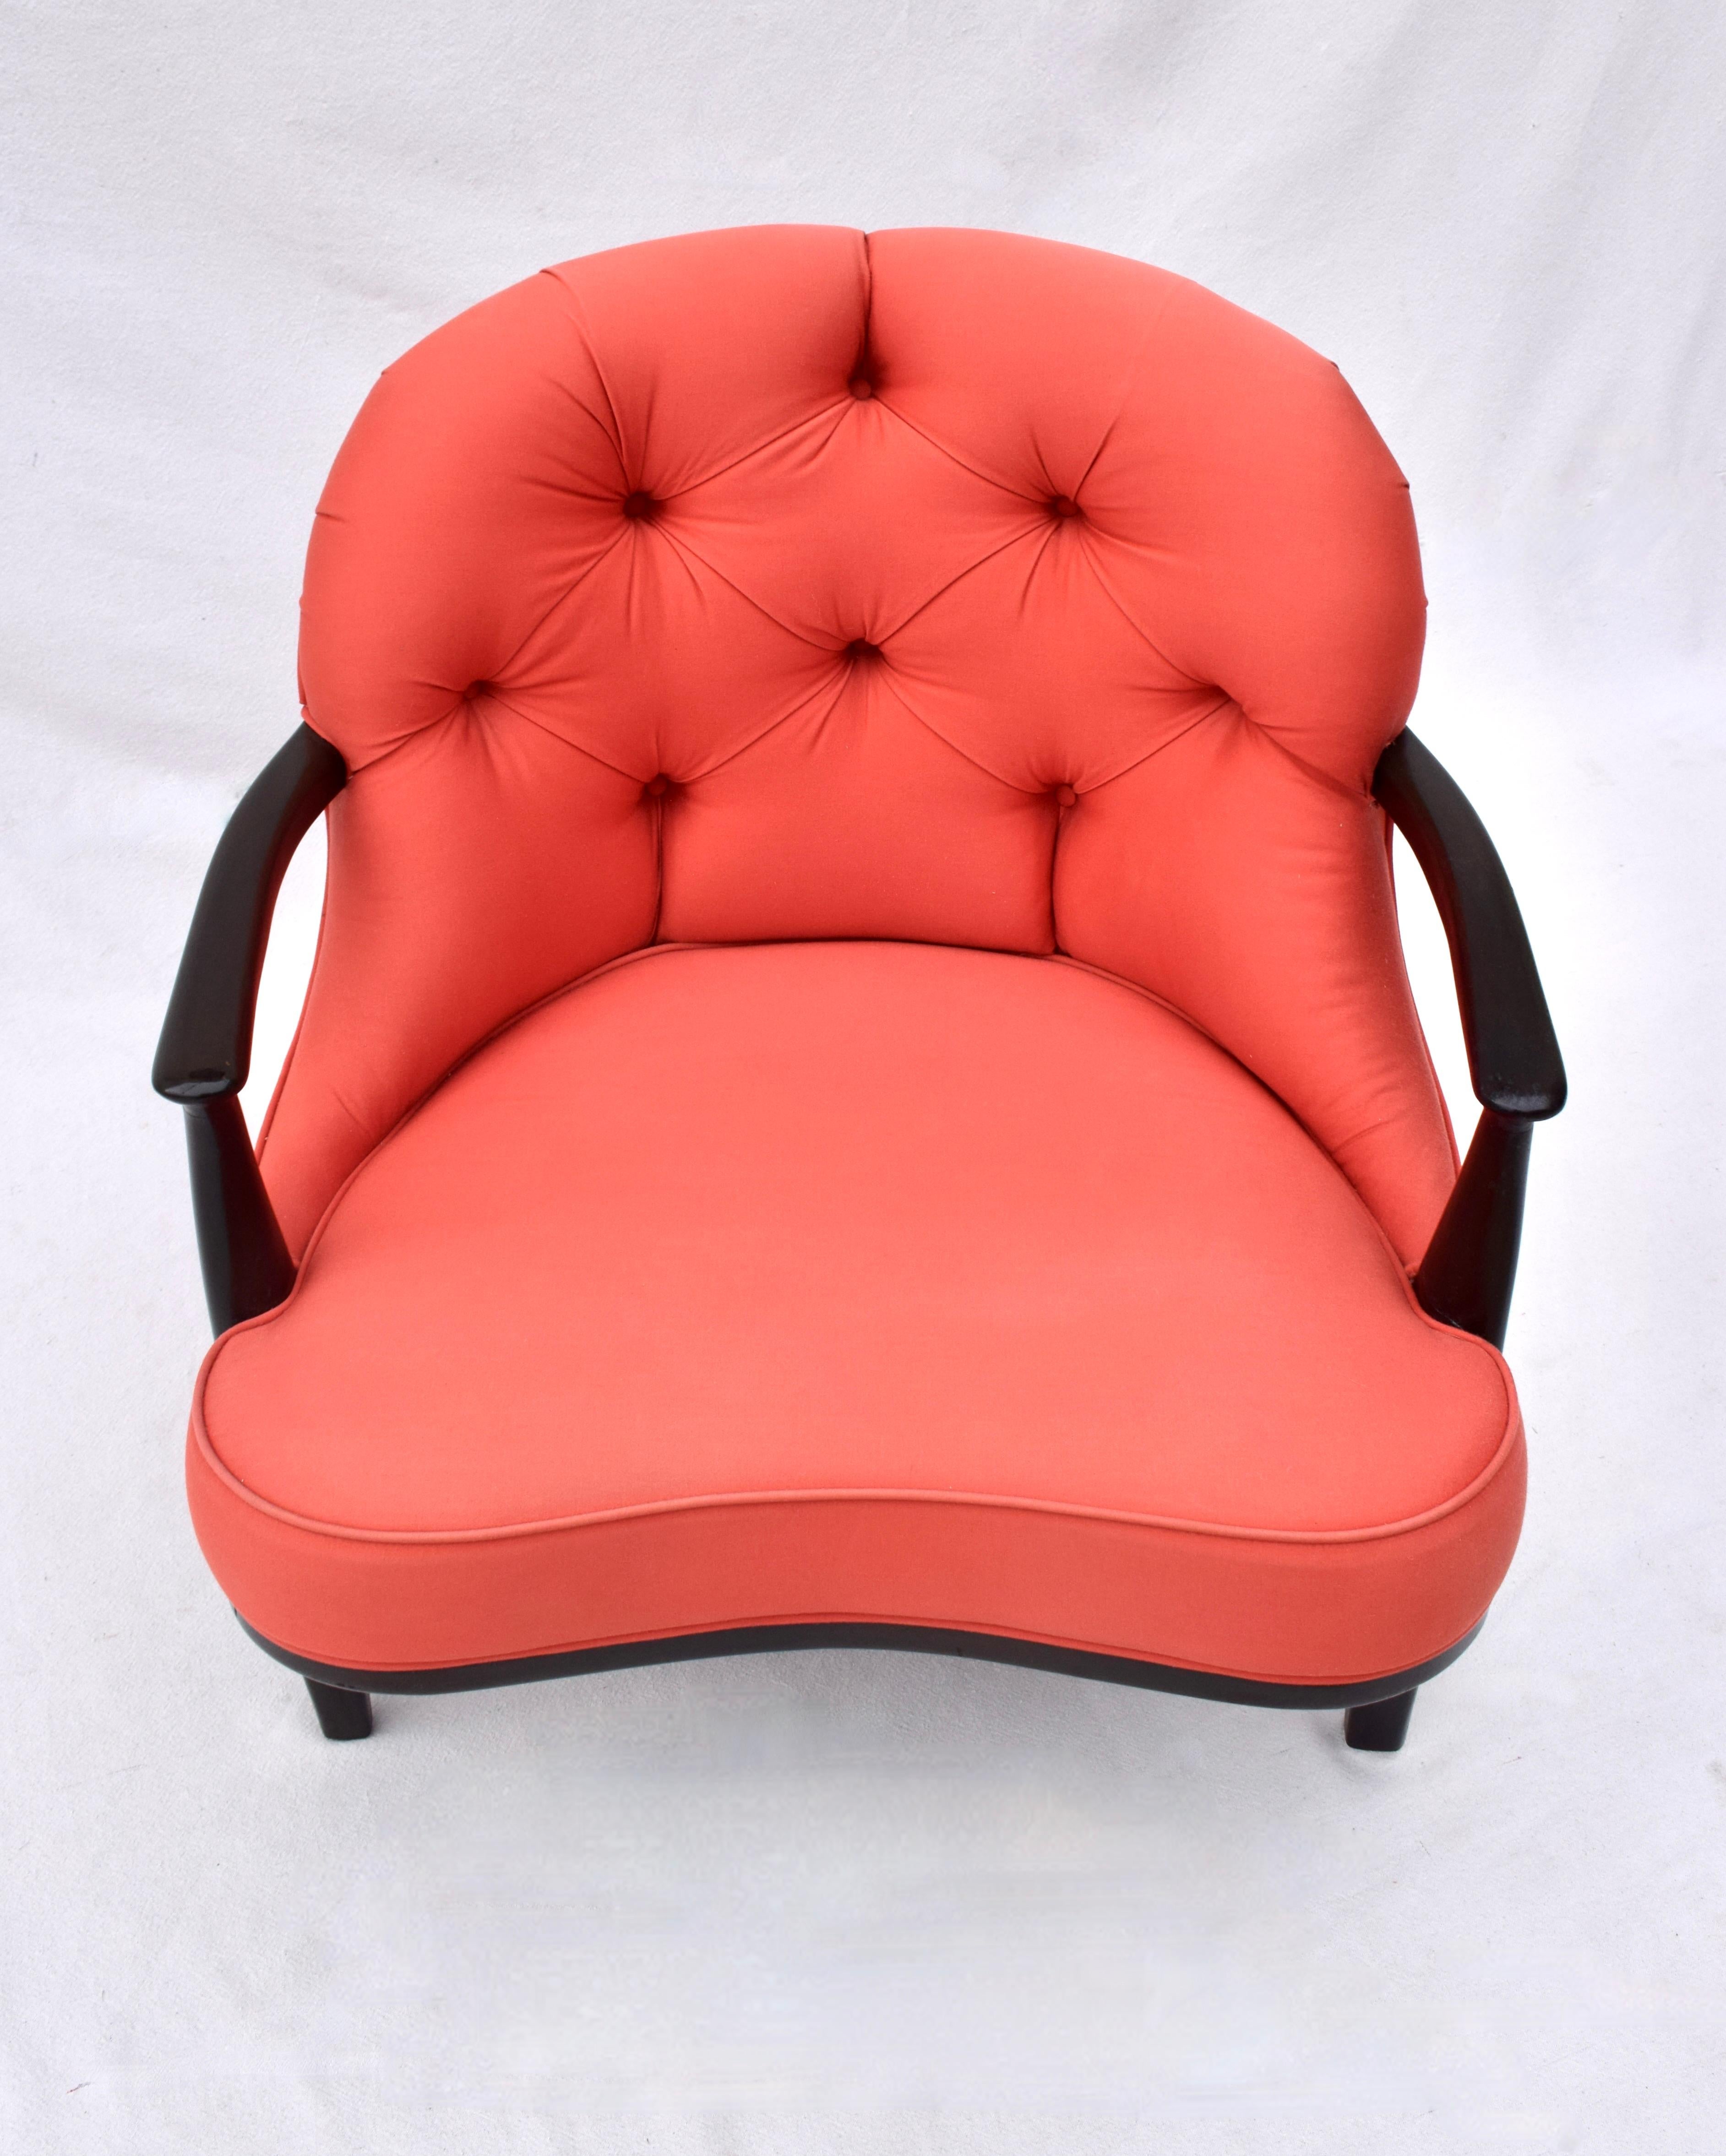 Lounge-Sessel der Janus Collection von Edward Wormley für Dunbar.
Armlehnen und Beine aus ebonisiertem Nussbaumholz mit freiliegender Zarge, rote Polsterung mit getufteter Rückenlehne und geschwungenem Sitz. Extremer Komfort, zeitloses